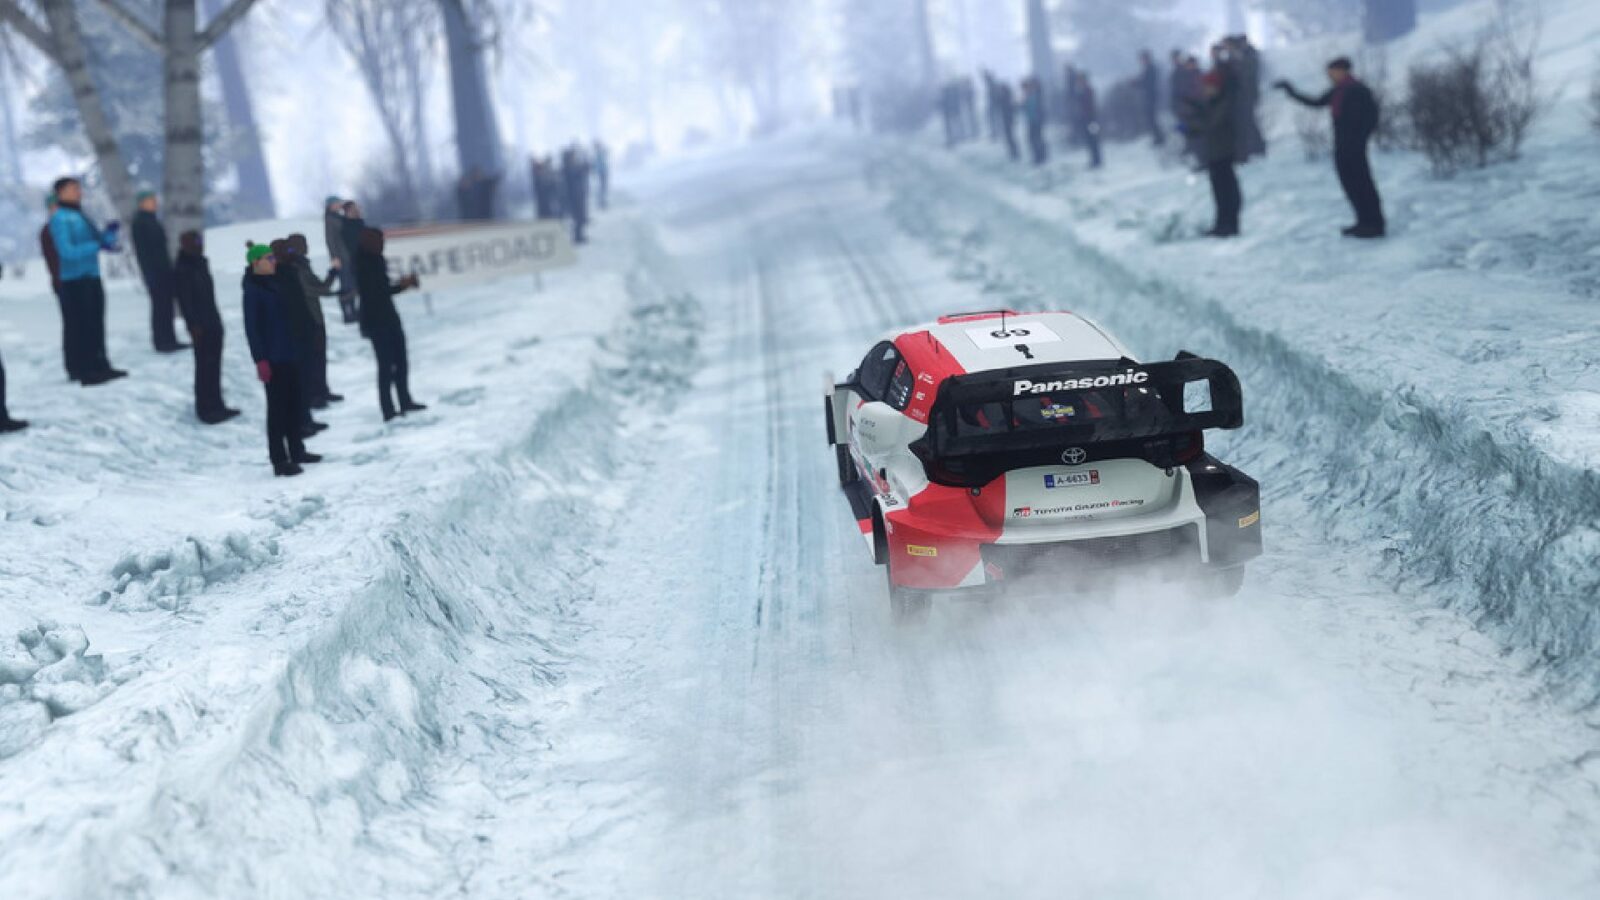 WRCジェネレーションズはハイブリッドカーなどをラリーシムにもたらします